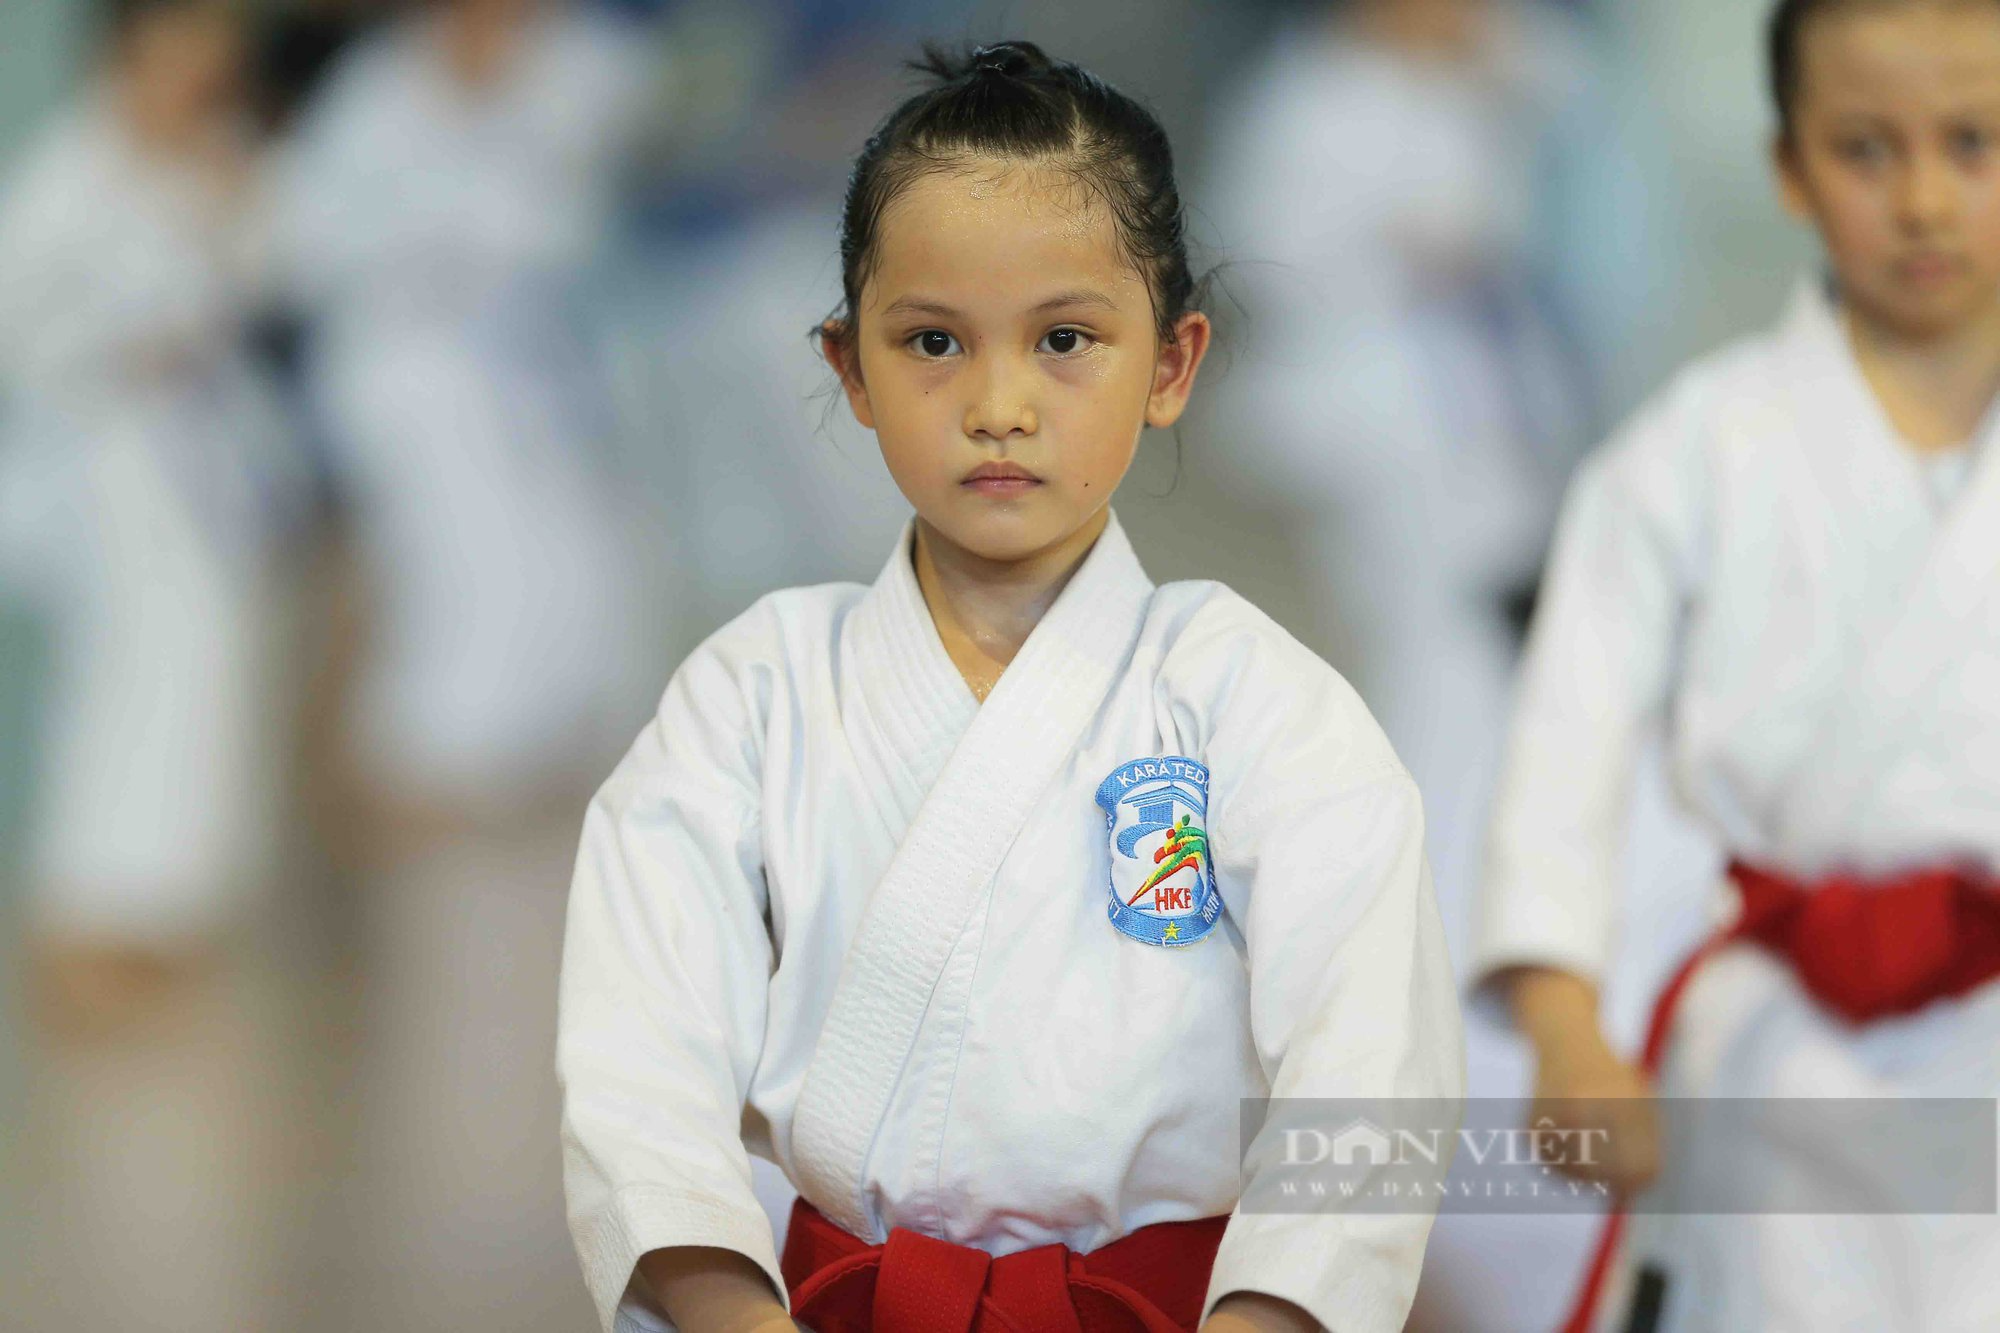 Ấn tượng những màn trình diễn siêu cute của các võ sĩ karate nhí - Ảnh 3.